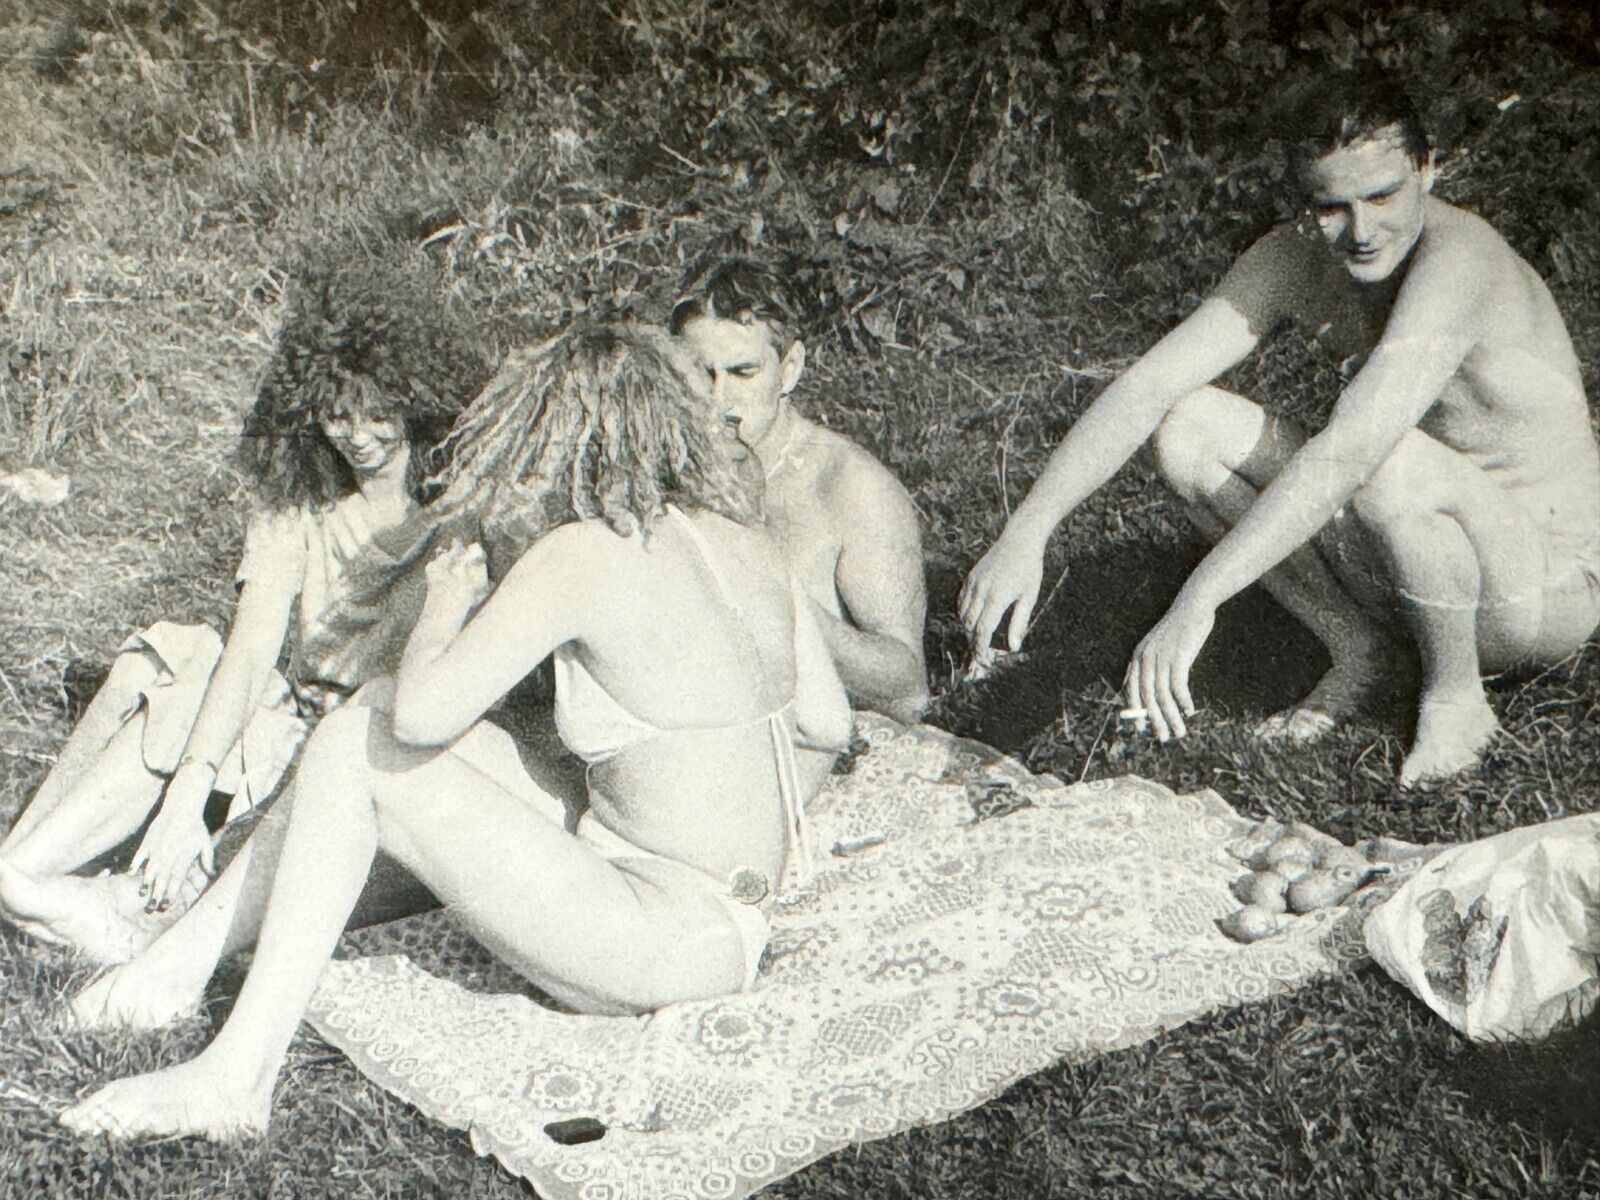 1980s Two Shirtless Men Beach Pretty Woman Bikini Gay int Vintage B&W Photo